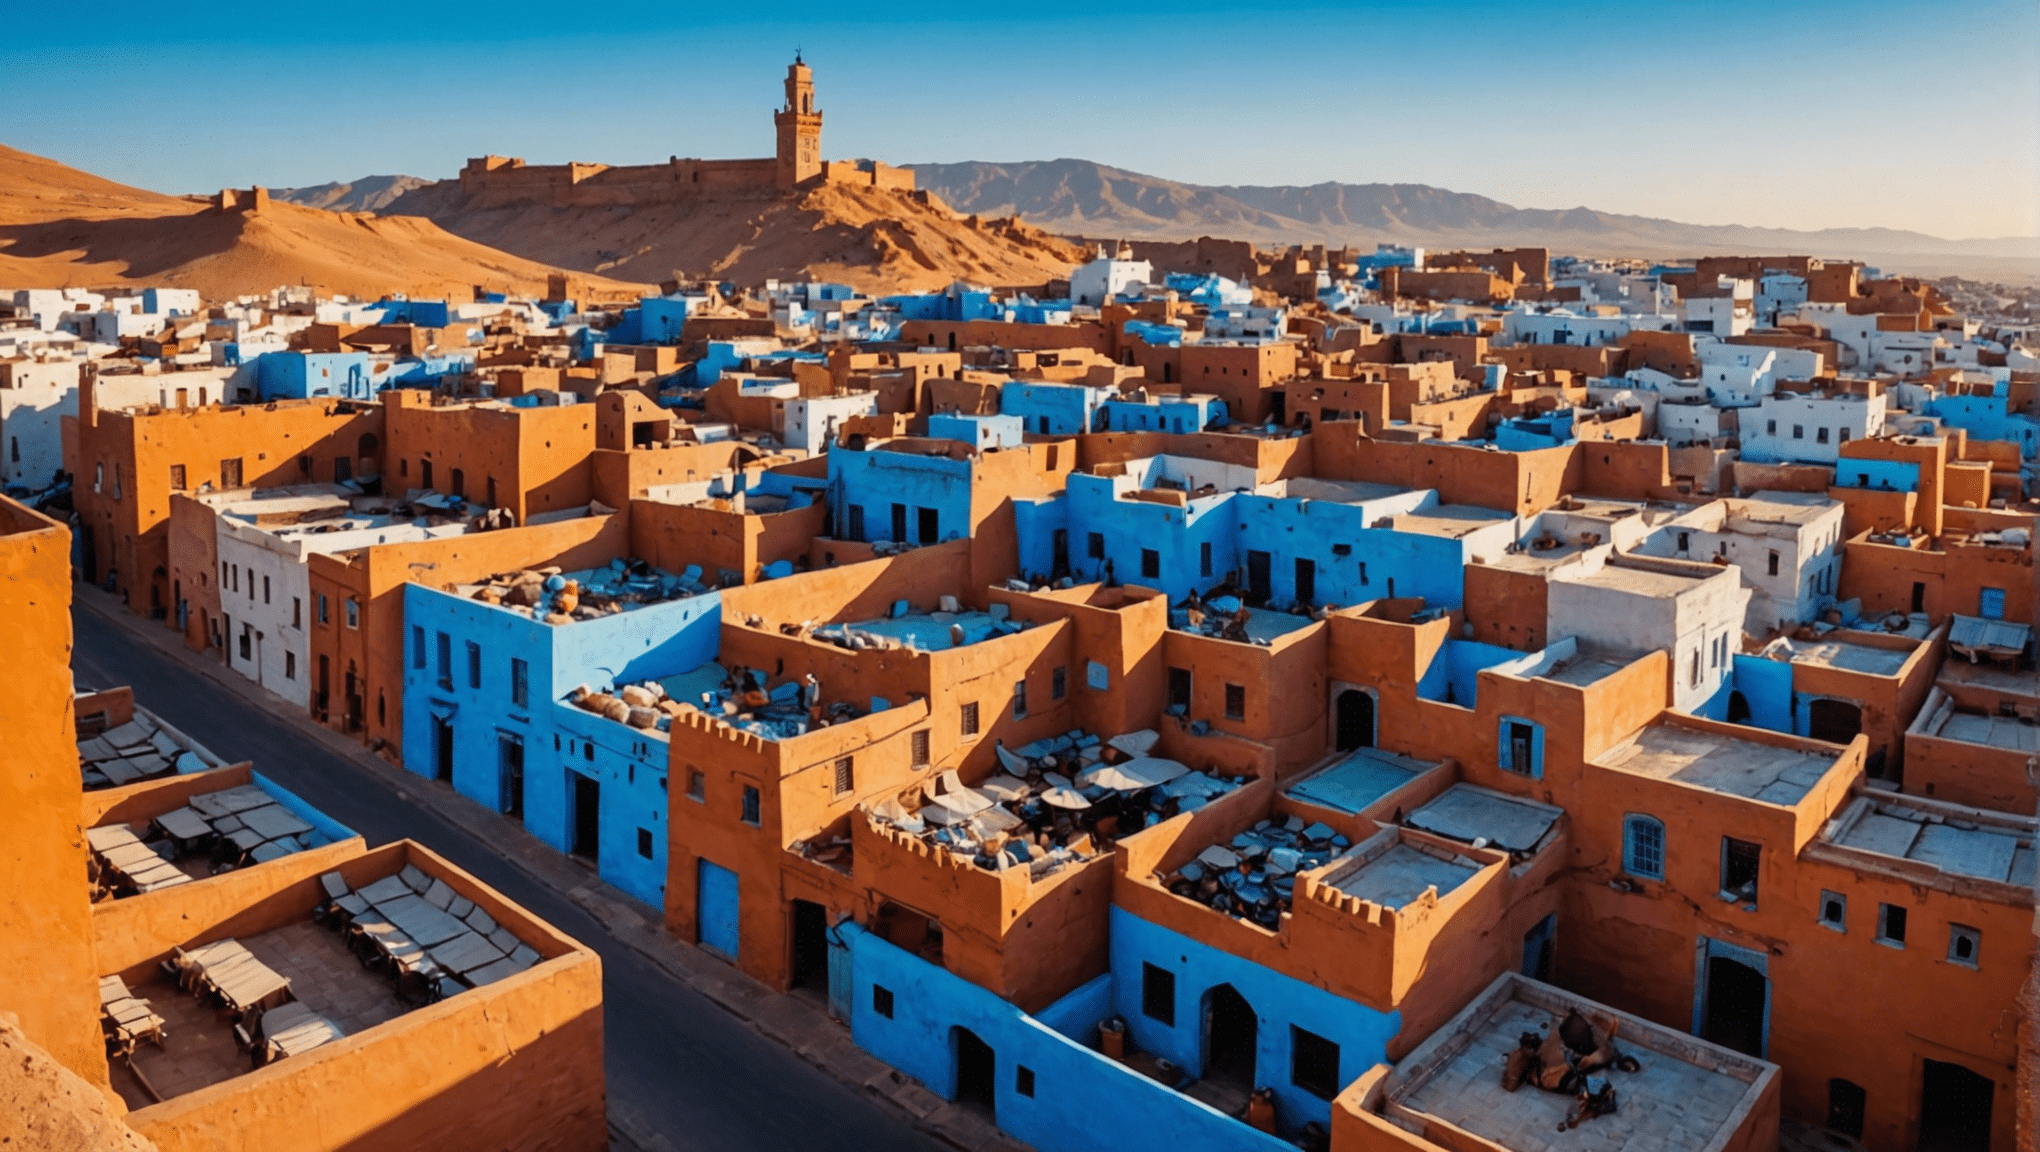 Descubra las localizaciones cinematográficas más impresionantes de Marruecos e inspírese para visitar estos impresionantes lugares en su próxima aventura.